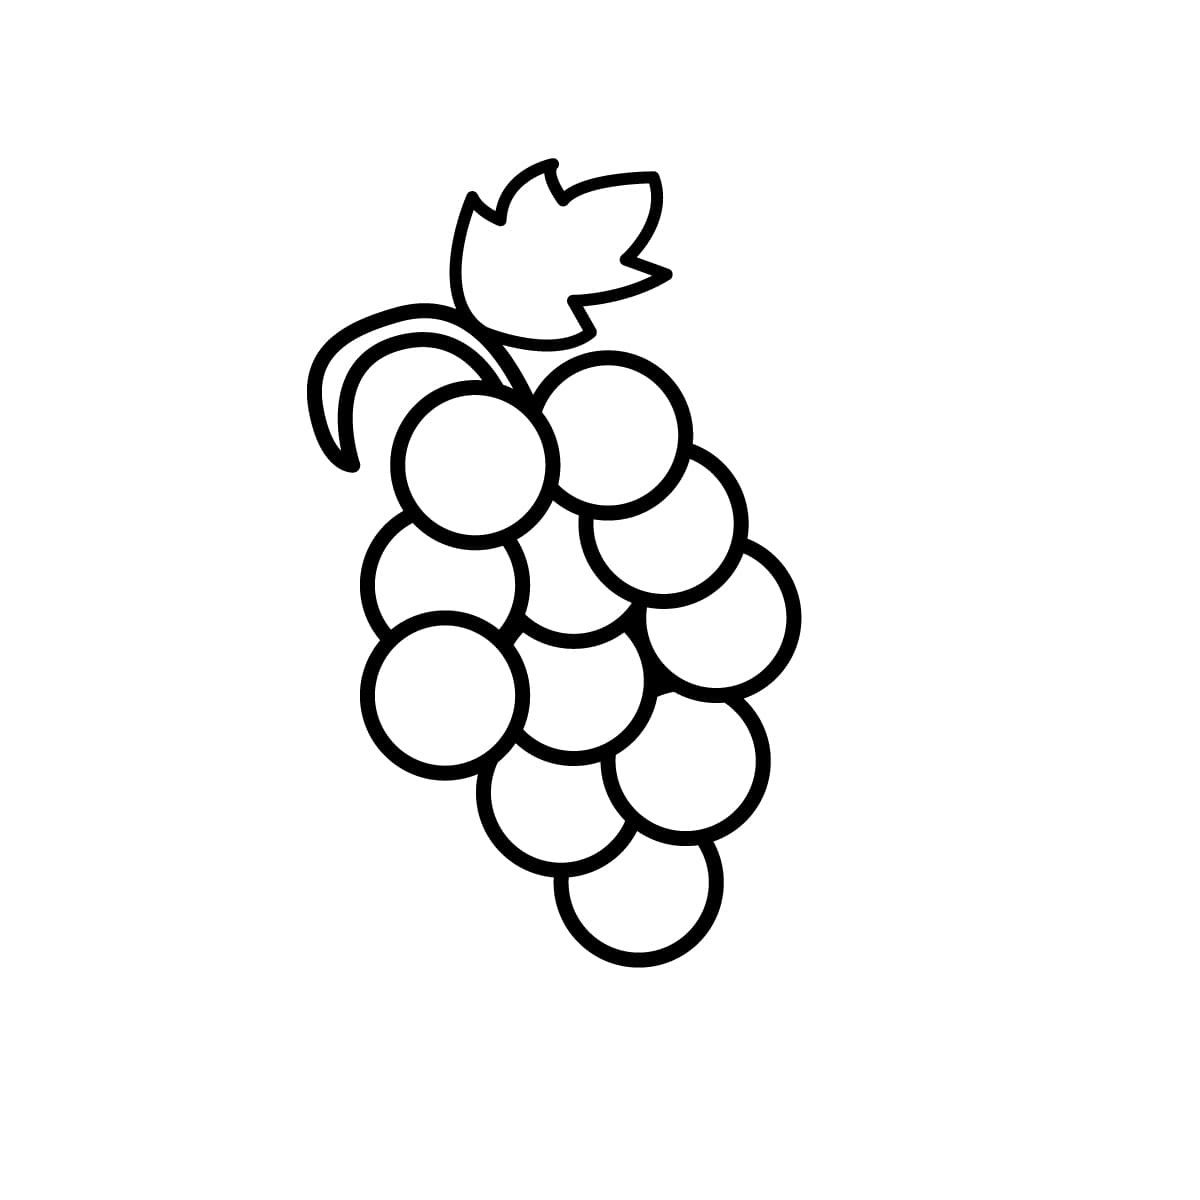 Imagen de uvas para colorear